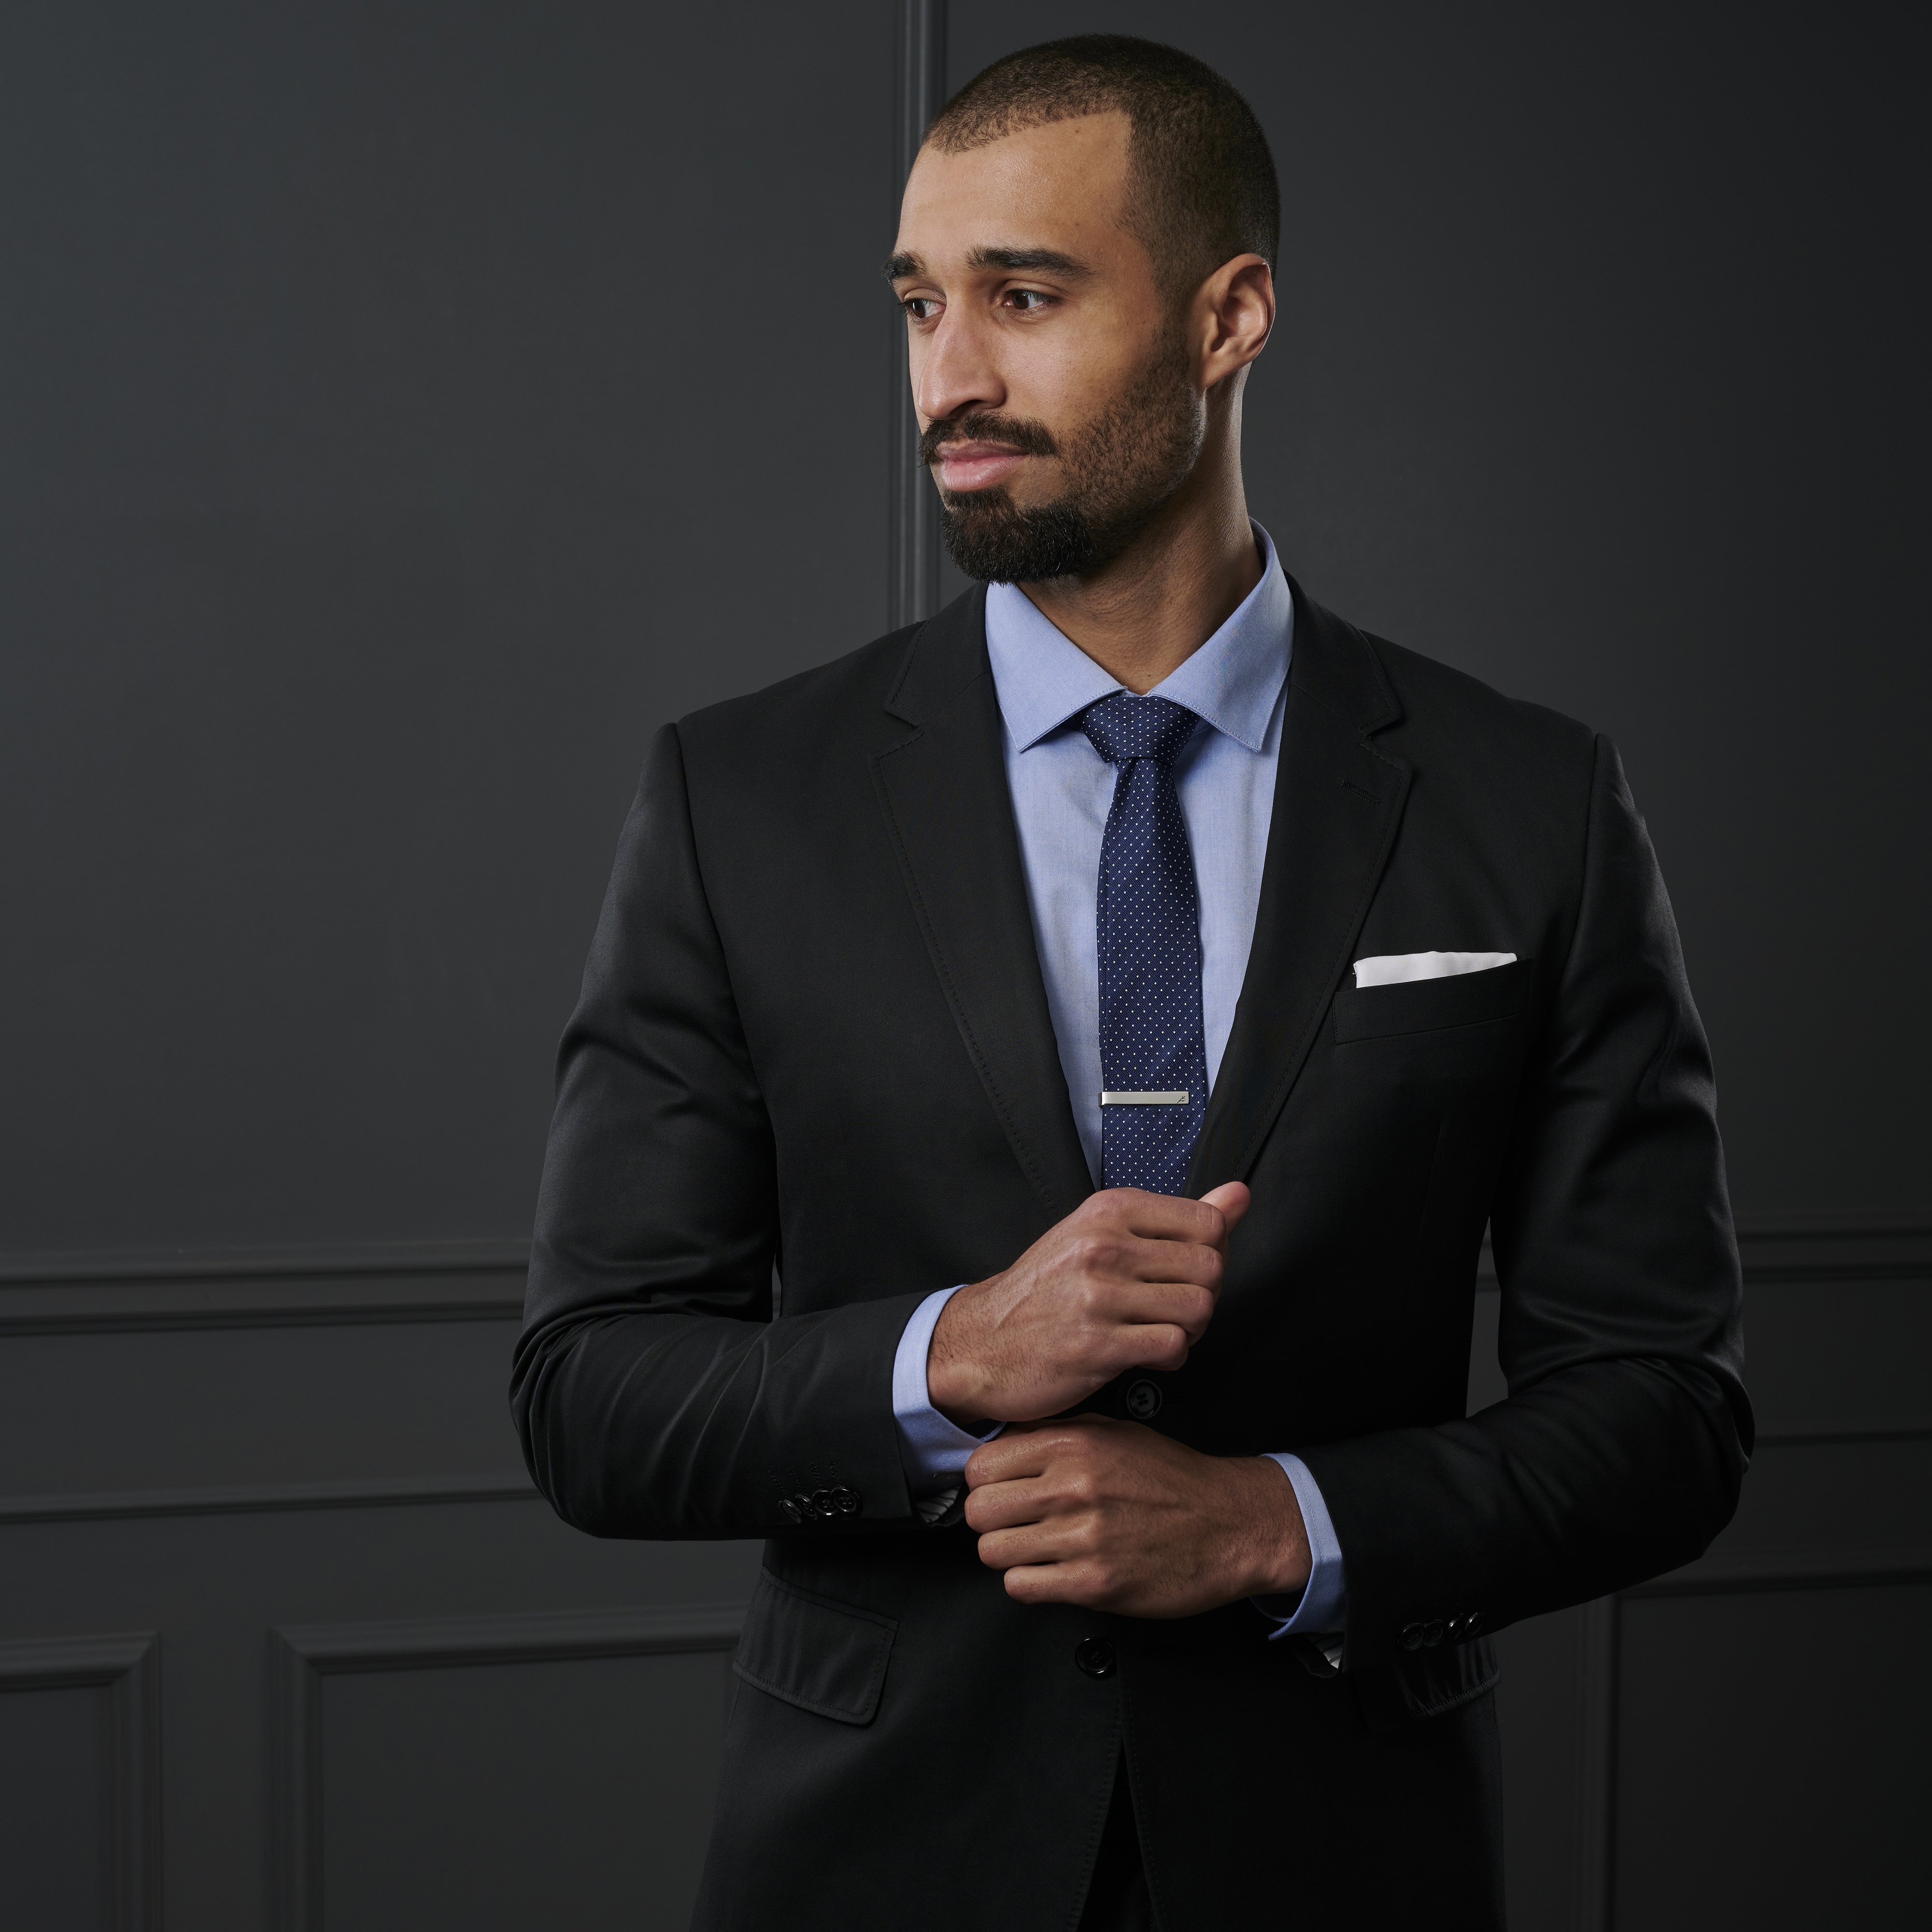 Cómo vestir para una entrevista de trabajo: guía para hombres